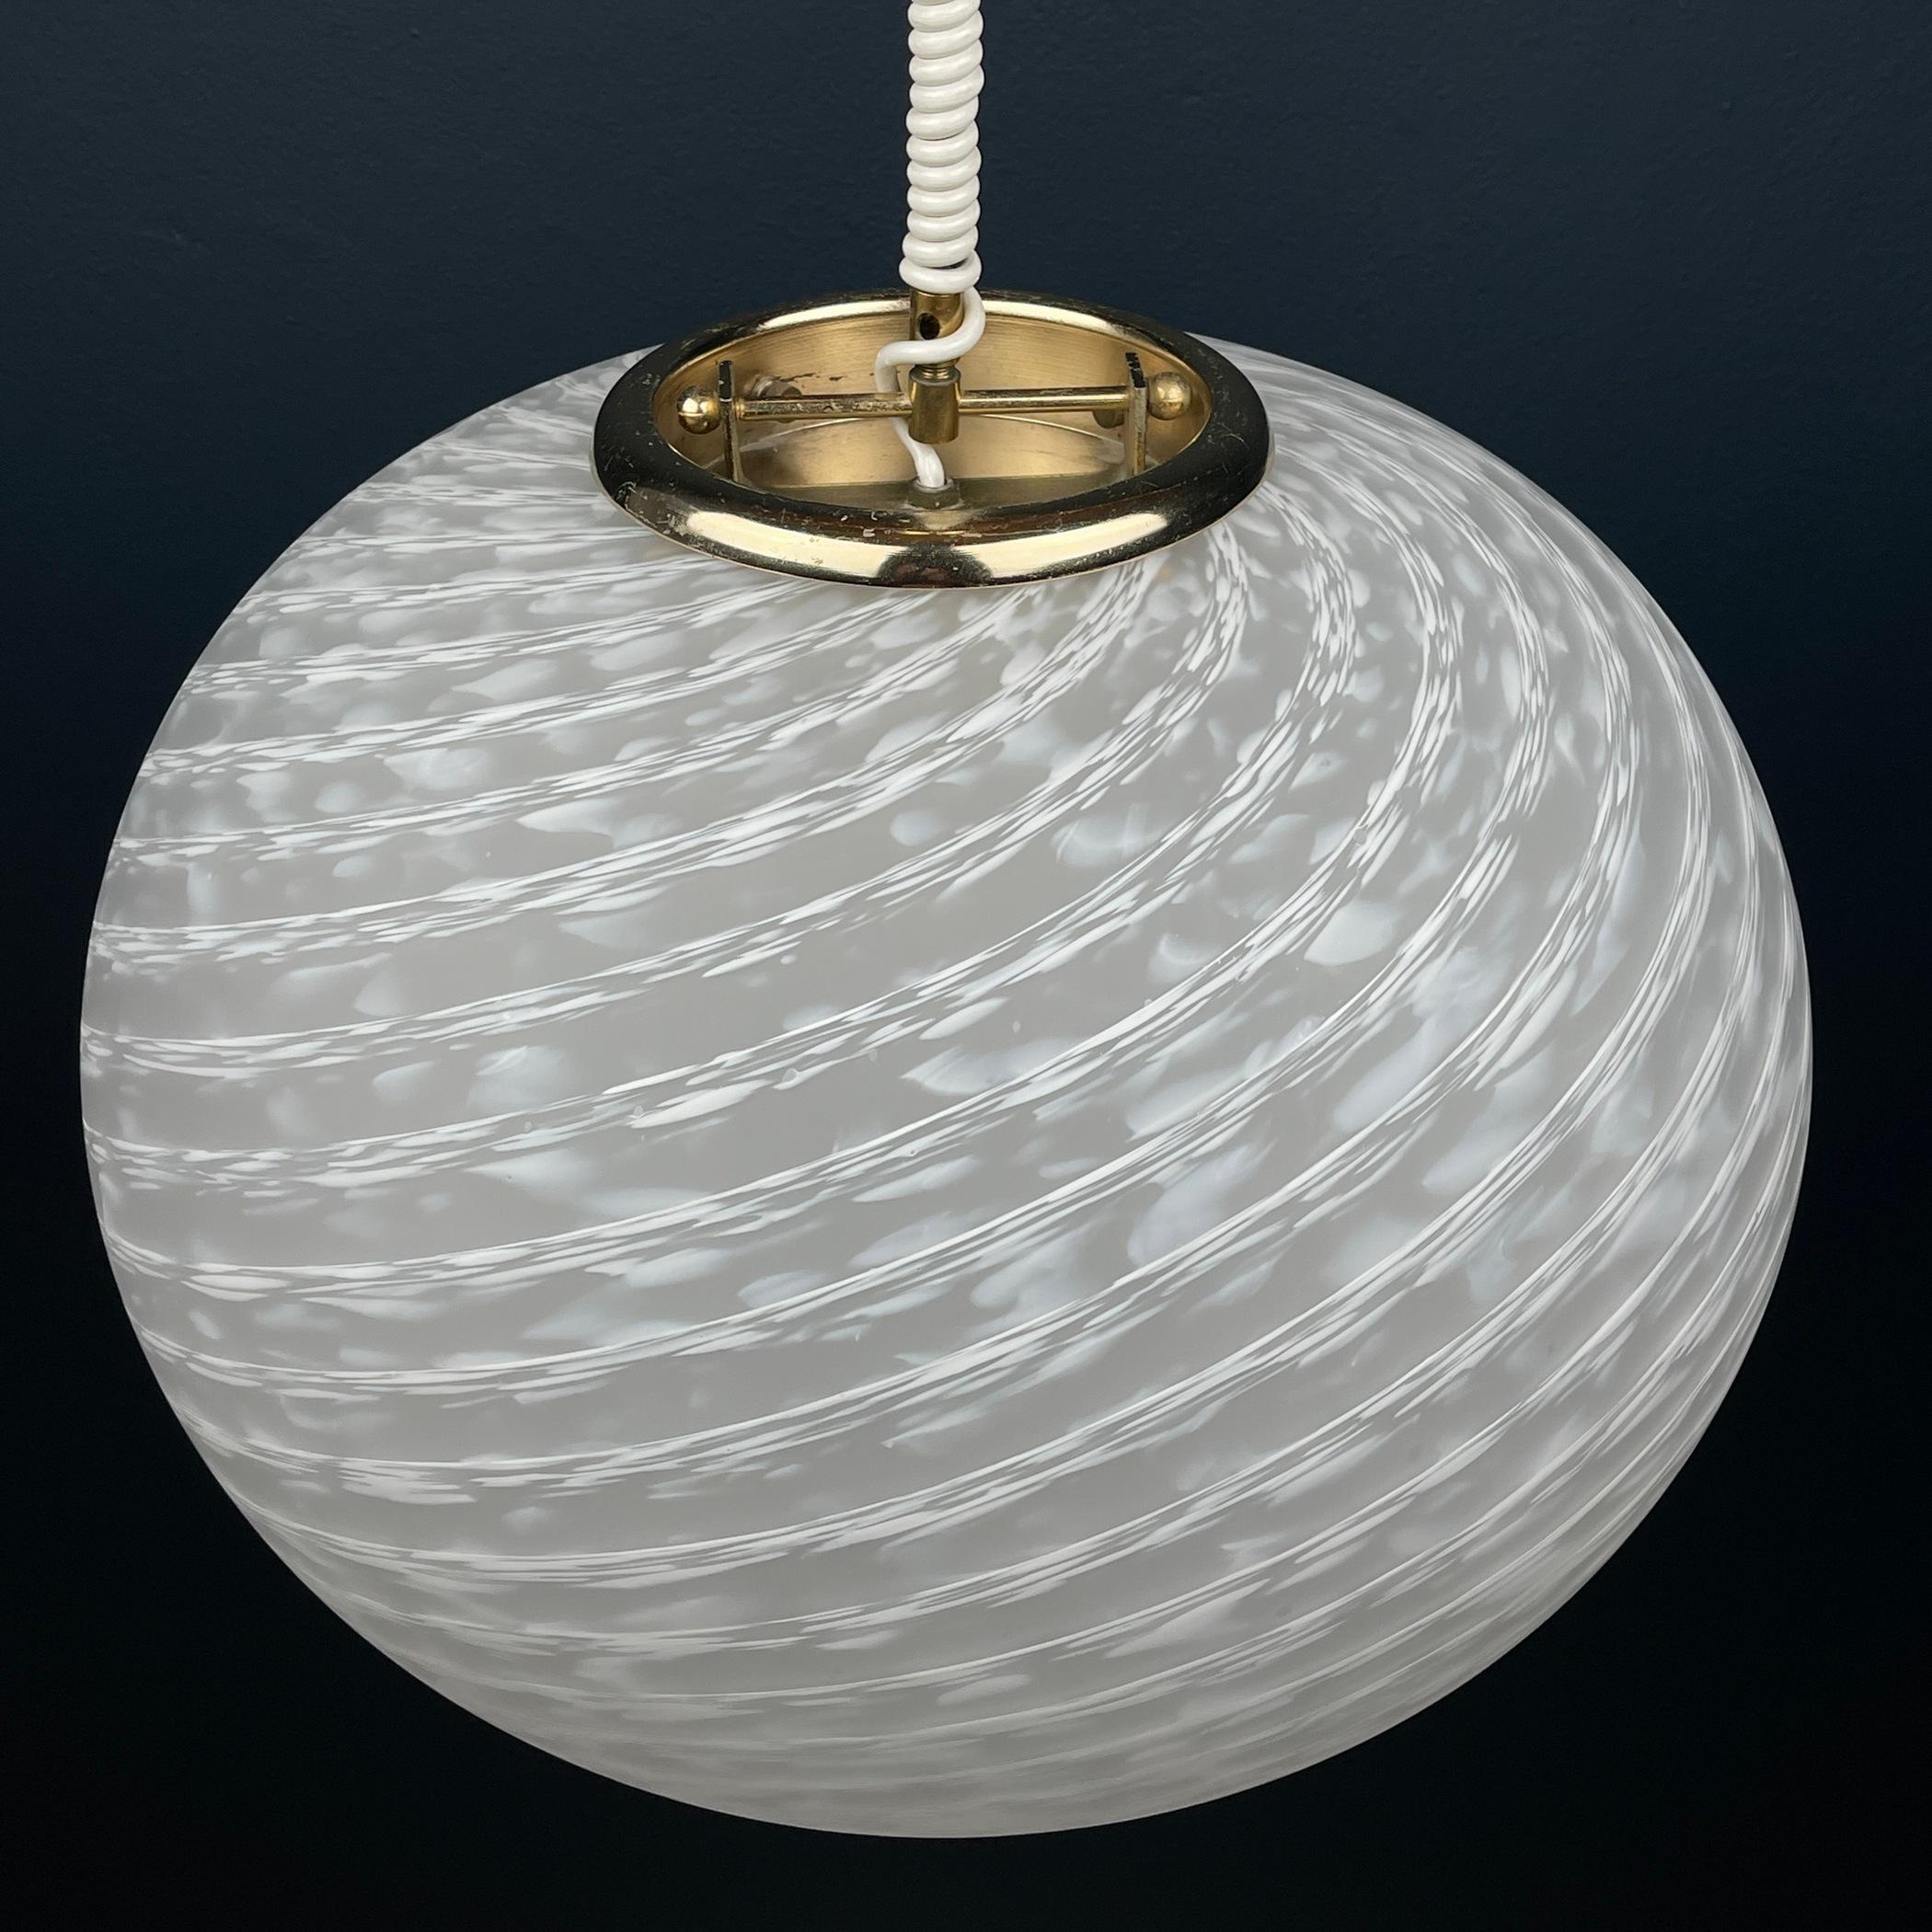 Entrez dans le monde captivant de l'artisanat italien vintage avec cette exquise lampe Murano à tourbillon de Vetri Murano, fabriquée avec expertise en Italie dans les années 1970. Cette lampe présente un superbe design en verre blanc orné de